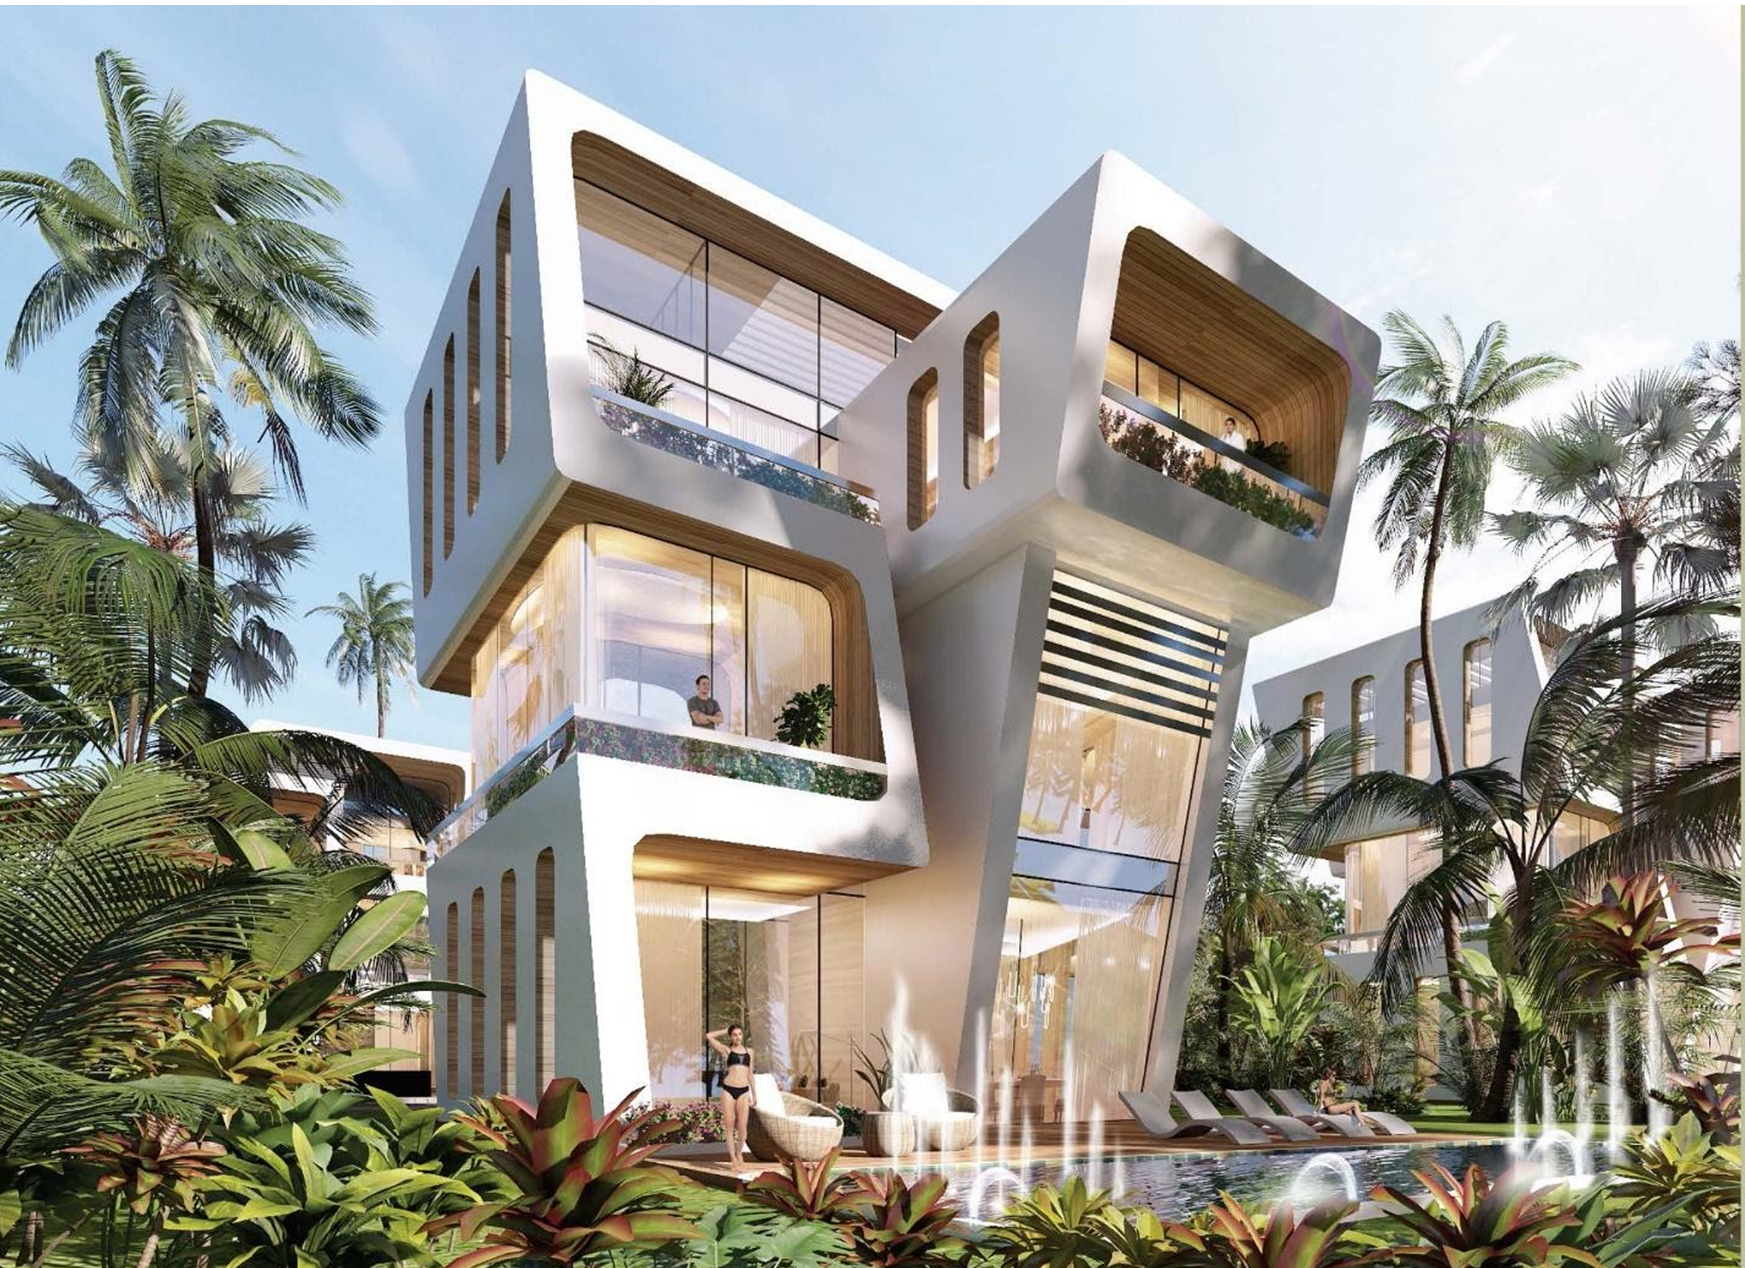 Sunshine Homes bất ngờ thâu tóm siêu dự án quy mô 5.000 tỷ tại Đà Nẵng - Ảnh 3.